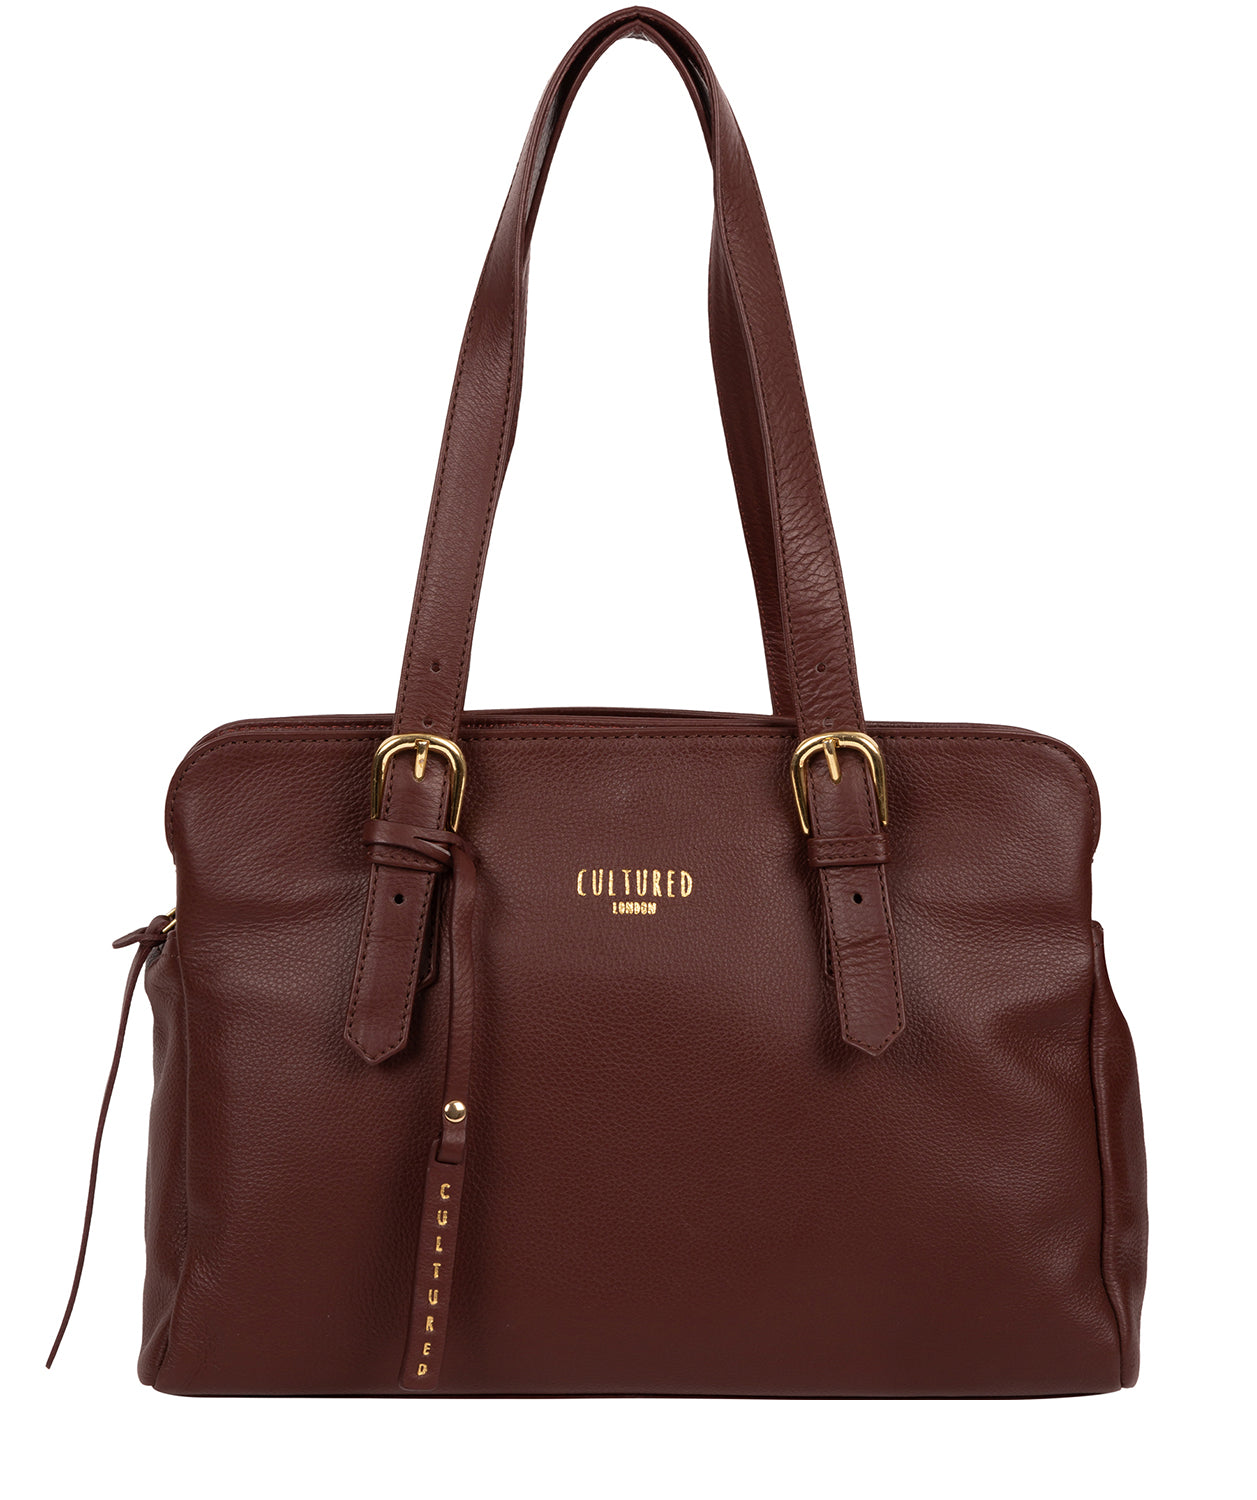 Prada brown leather bag  Brown leather bag, Bags, Leather handbags